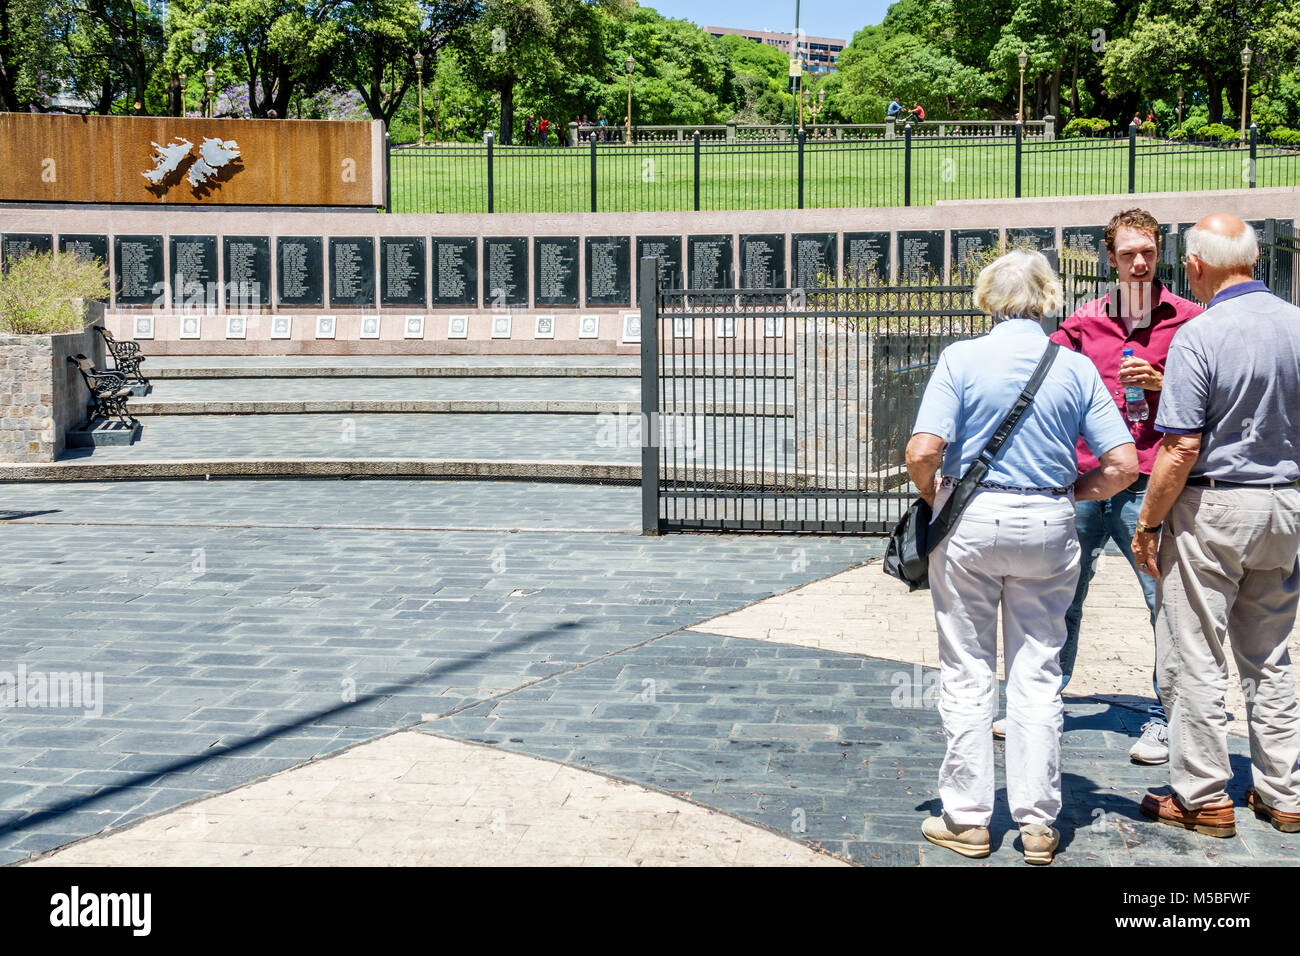 Buenos Aires Argentina,Plaza San Martín,parque,Monumento a los Caídos en Malvinas Monumento a los Caidos en Malvinas Falklands Guerra tumba vacía,hispano,m Foto de stock